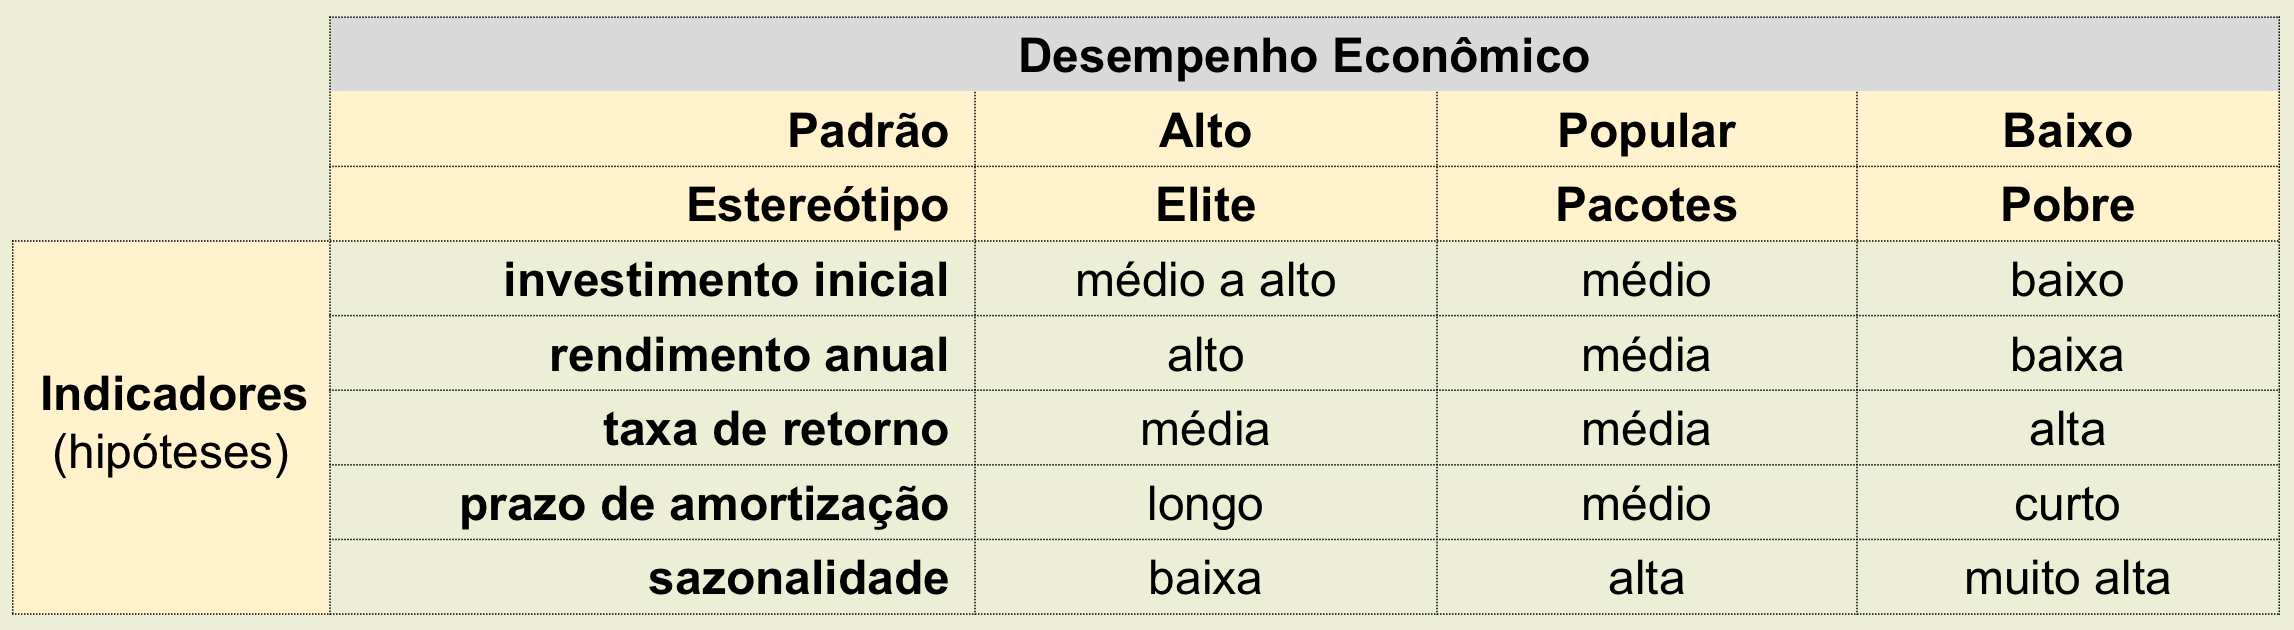 maranhao analise desempenho economico